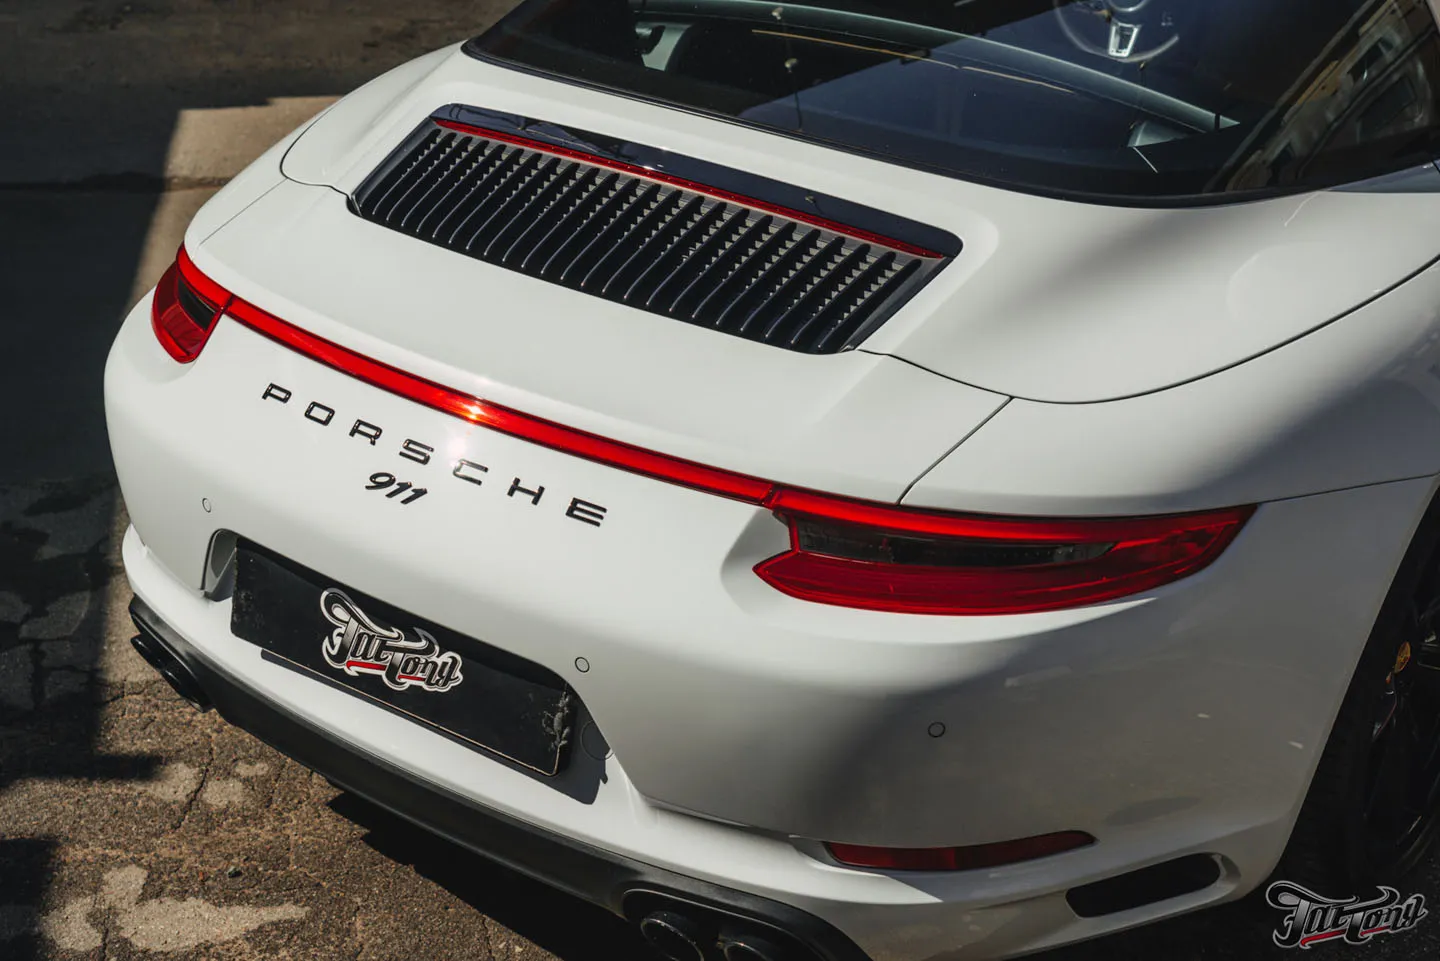 Как мы это делаем?! Полный комплекс детейлинг-услуг для Porsche 911 Targa 4S, окрас дисков и фирменный шиномонтаж